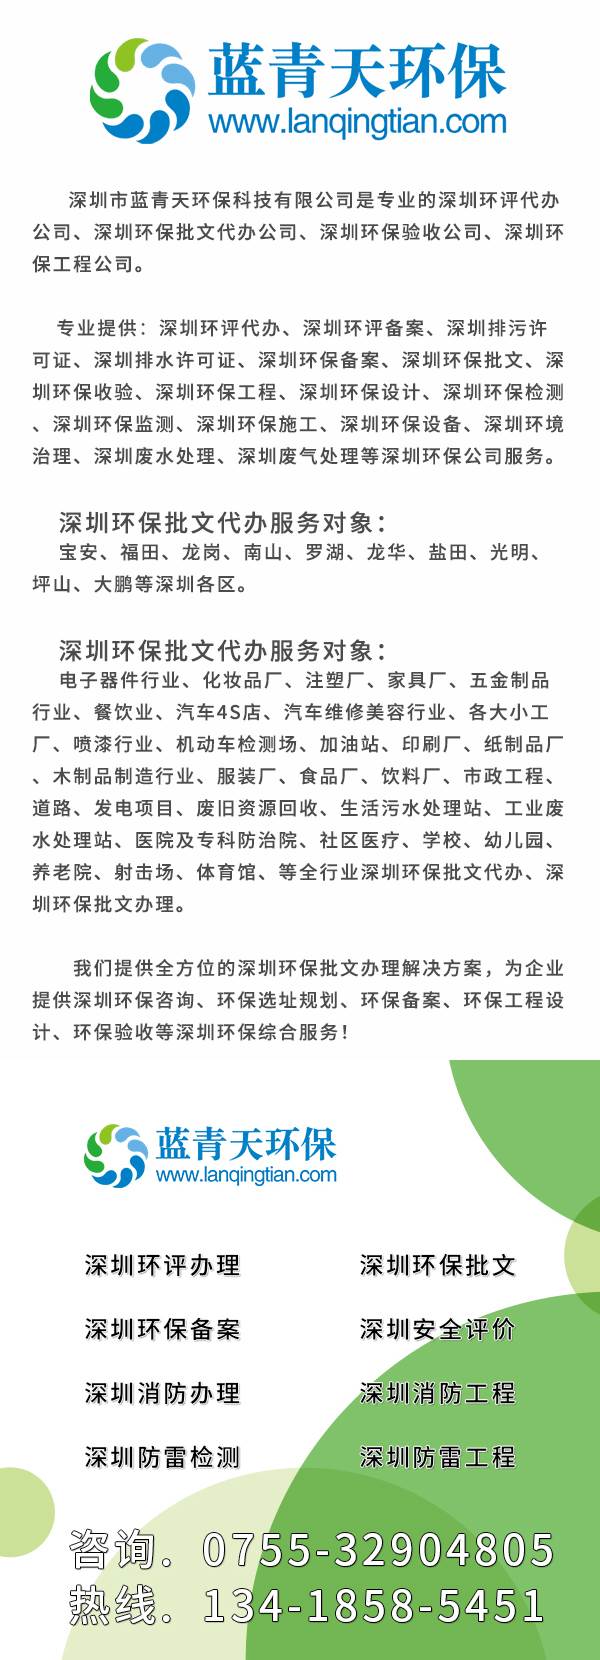 深圳加工企业办理环评需要什么,深圳办理环评文件